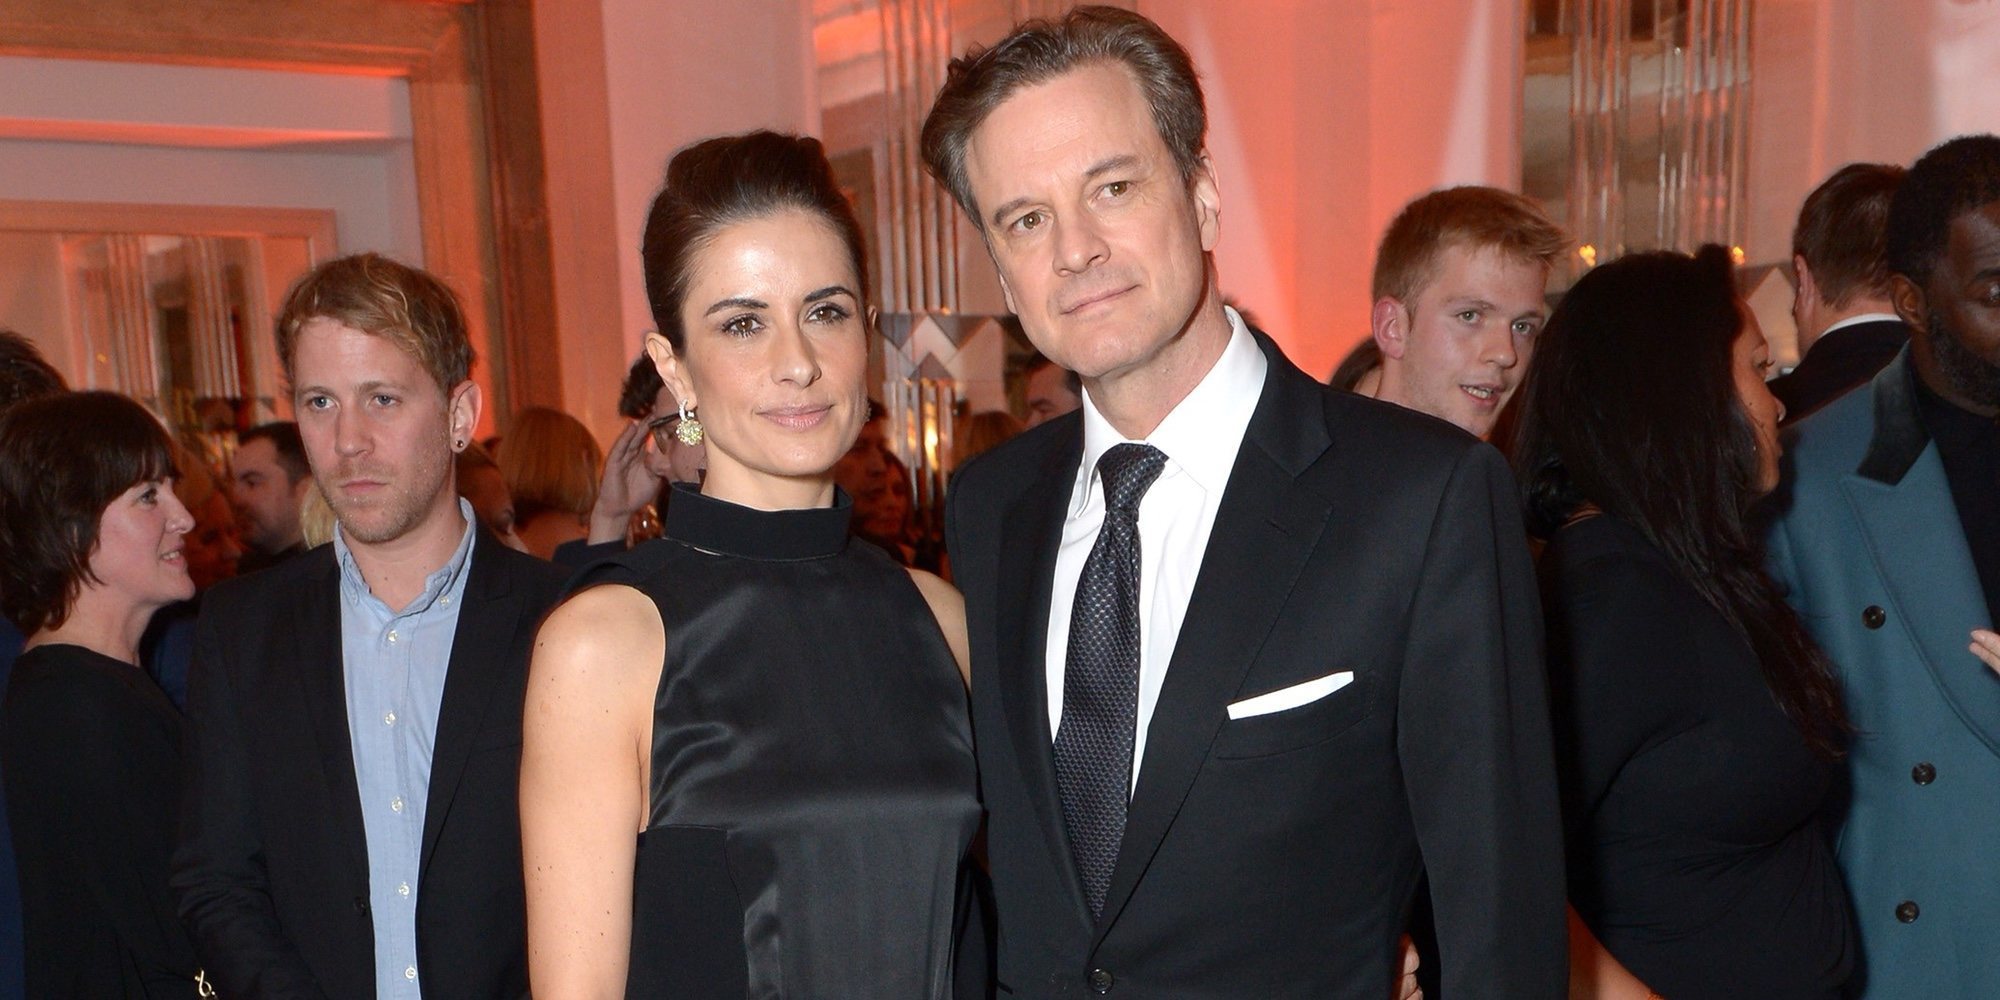 Colin Firth y Livia Giuggioli se separan tras 22 años de matrimonio